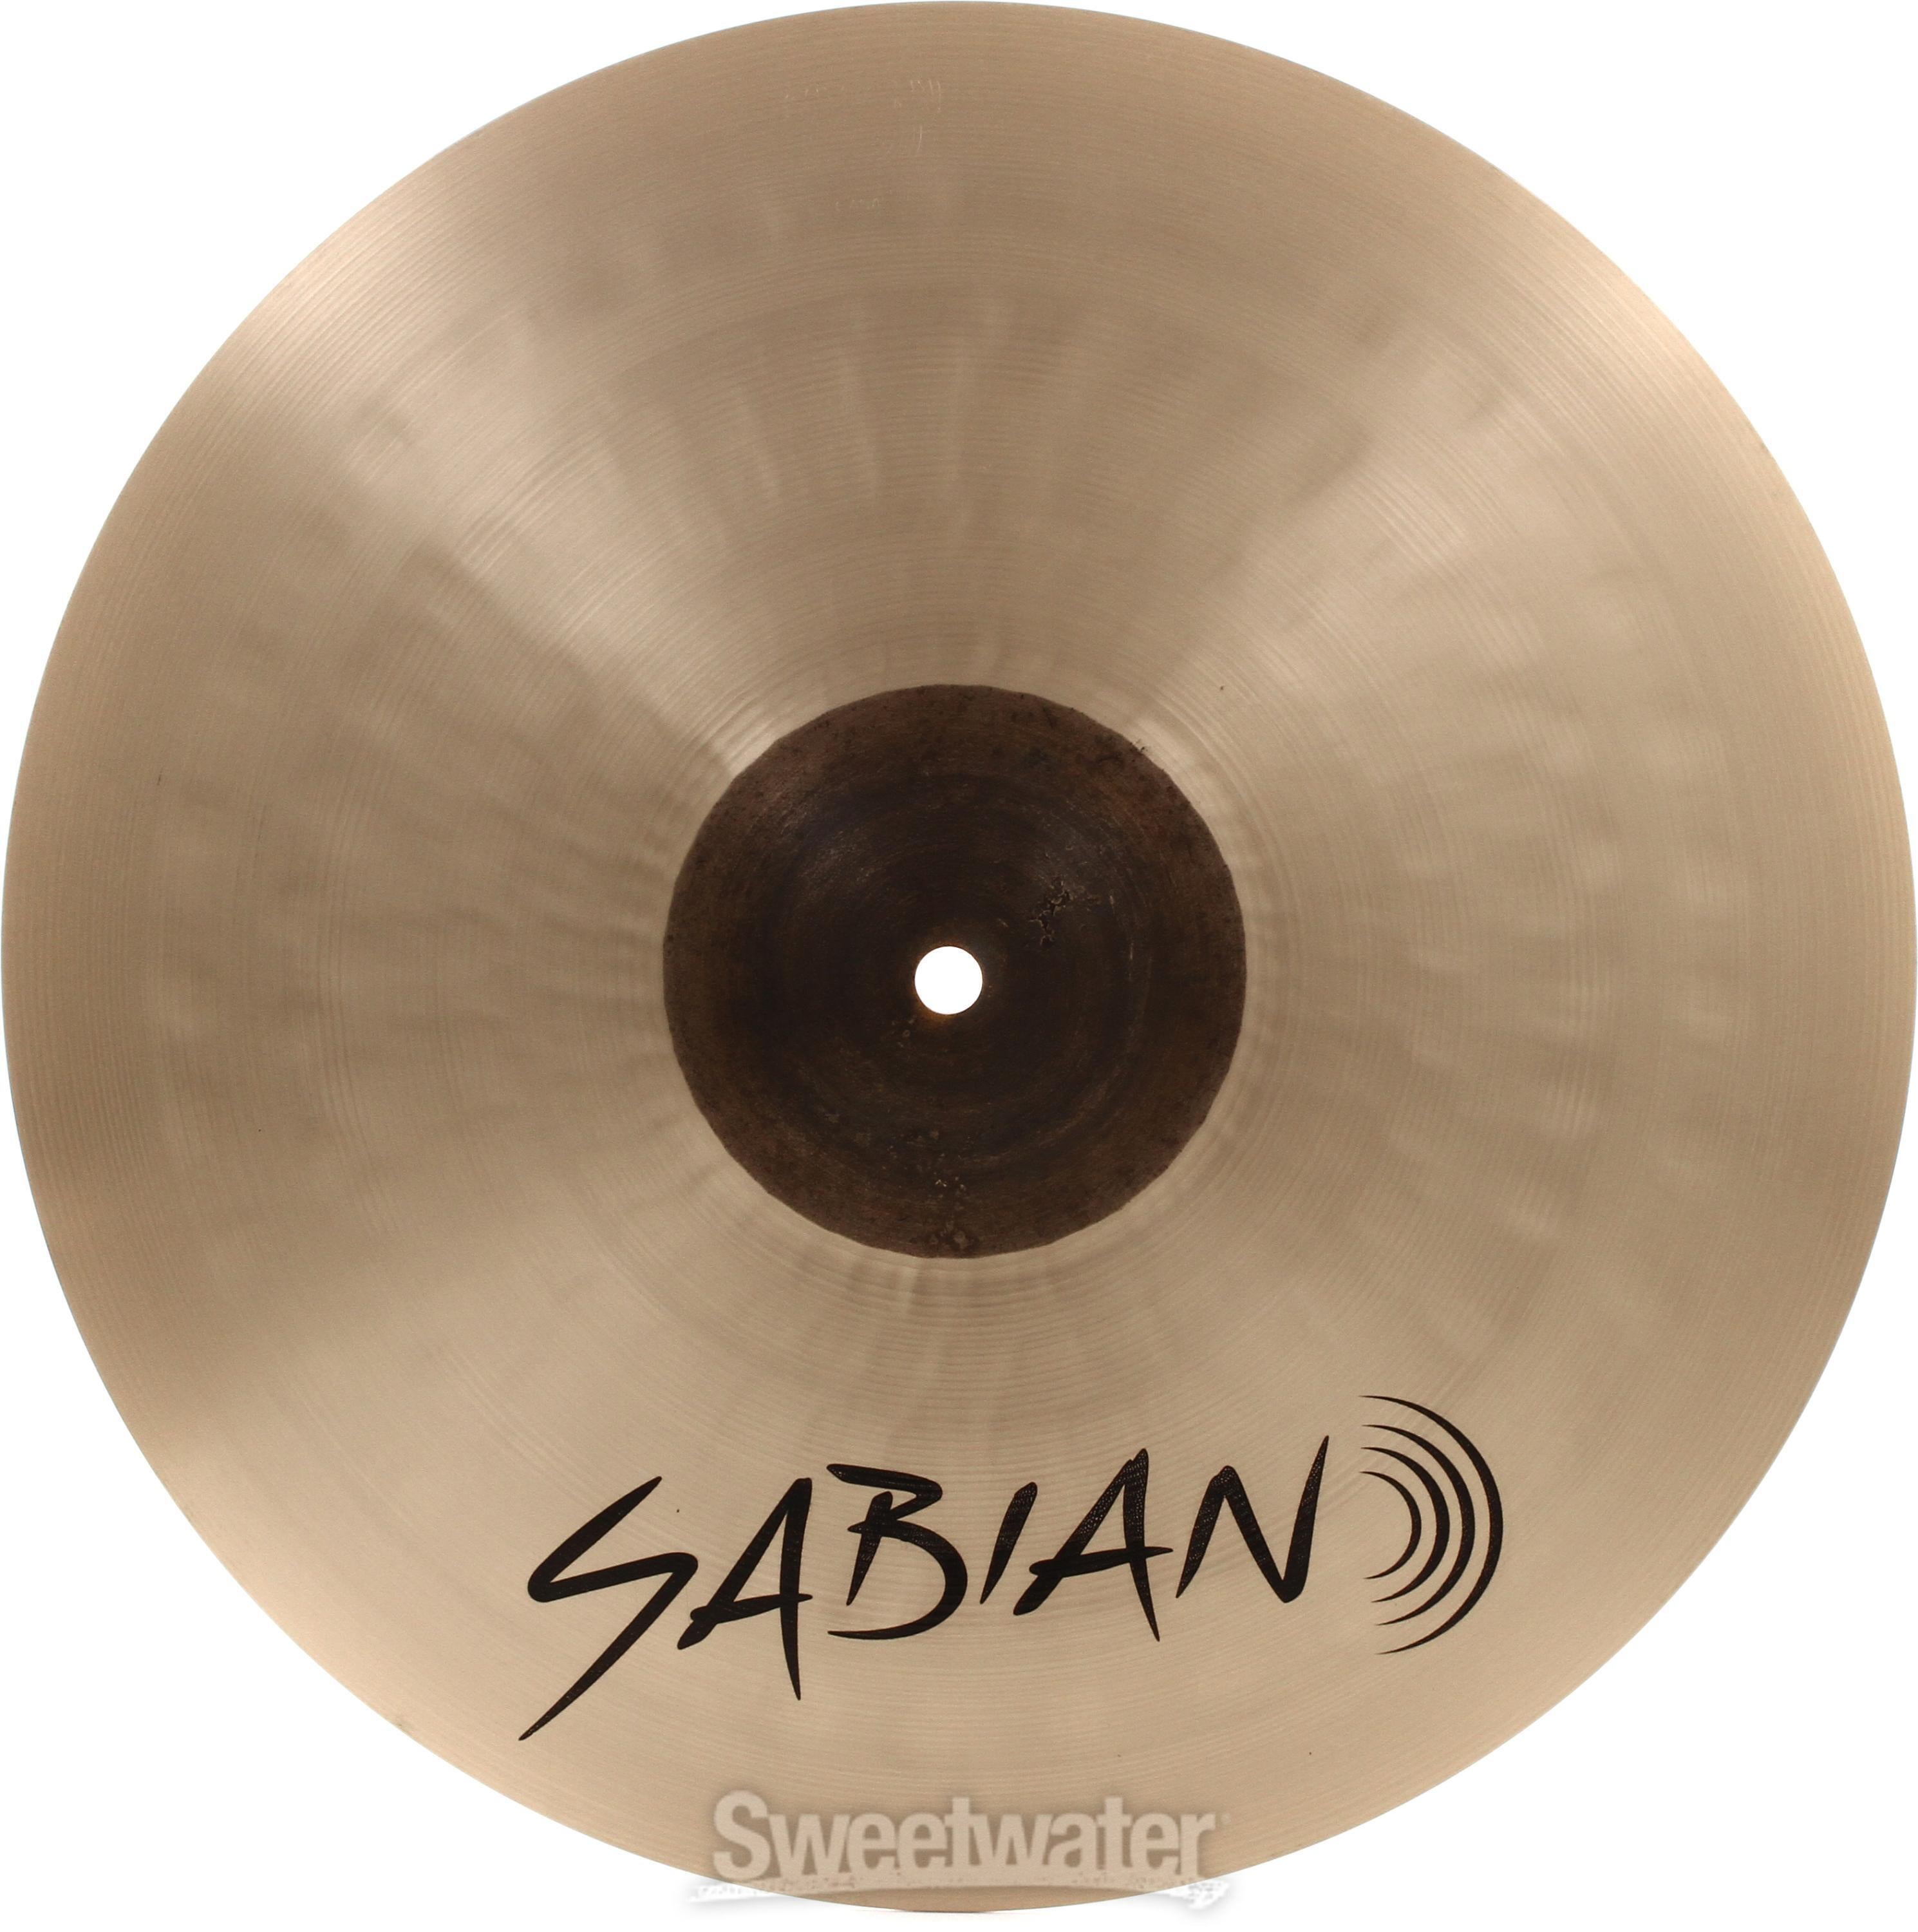 Sabian 15 inch AAX Medium Hi-hat Cymbals